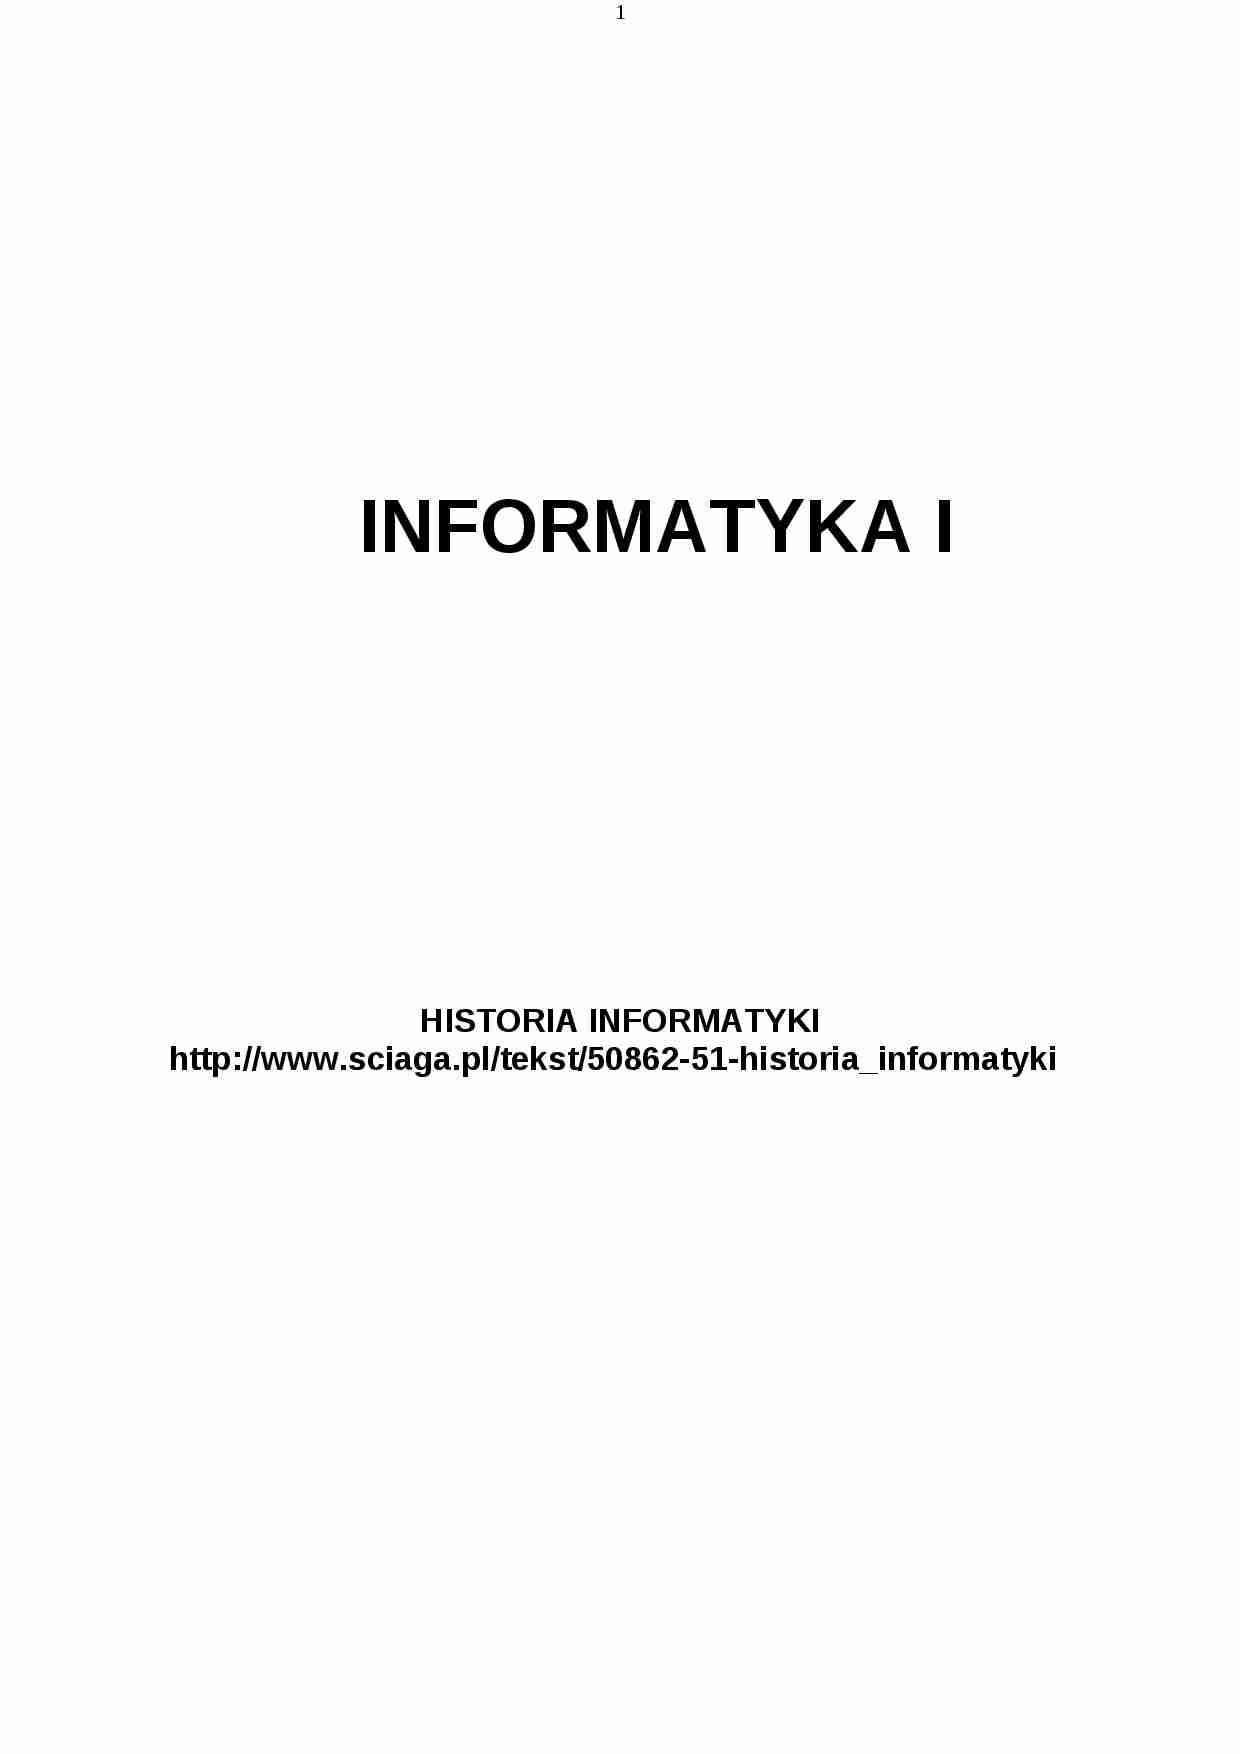 Informatyka, Grocholewski - wykłady - strona 1